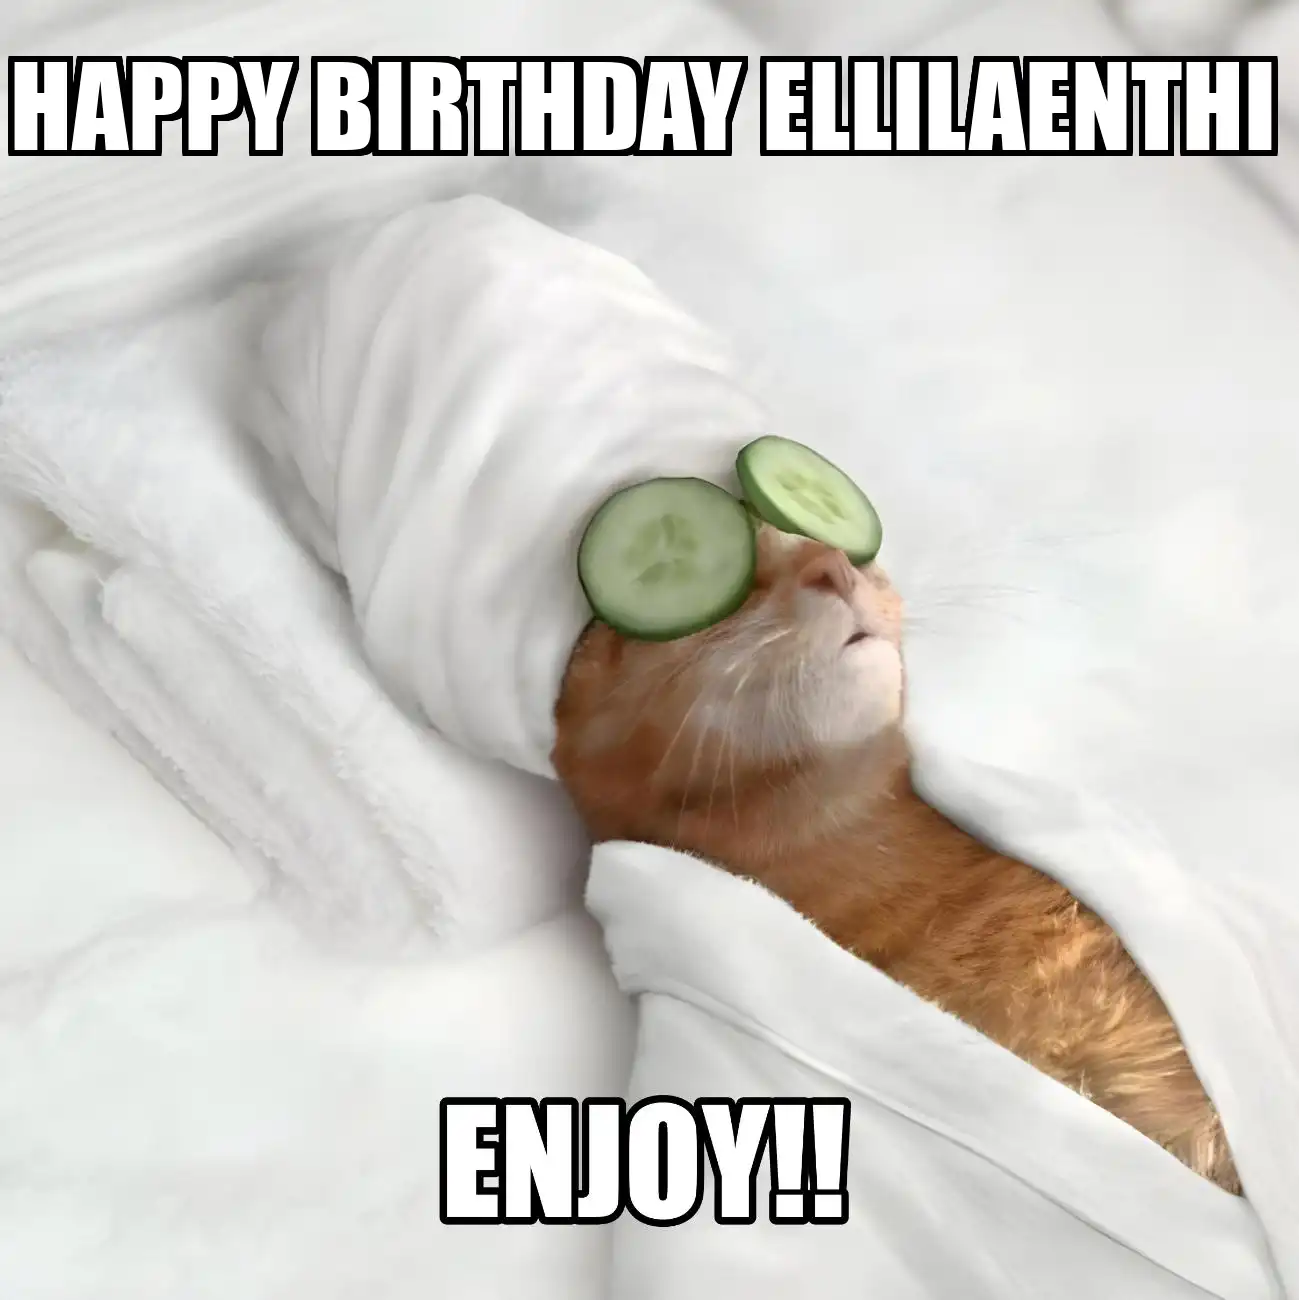 Happy Birthday Ellilaenthi Enjoy Cat Meme